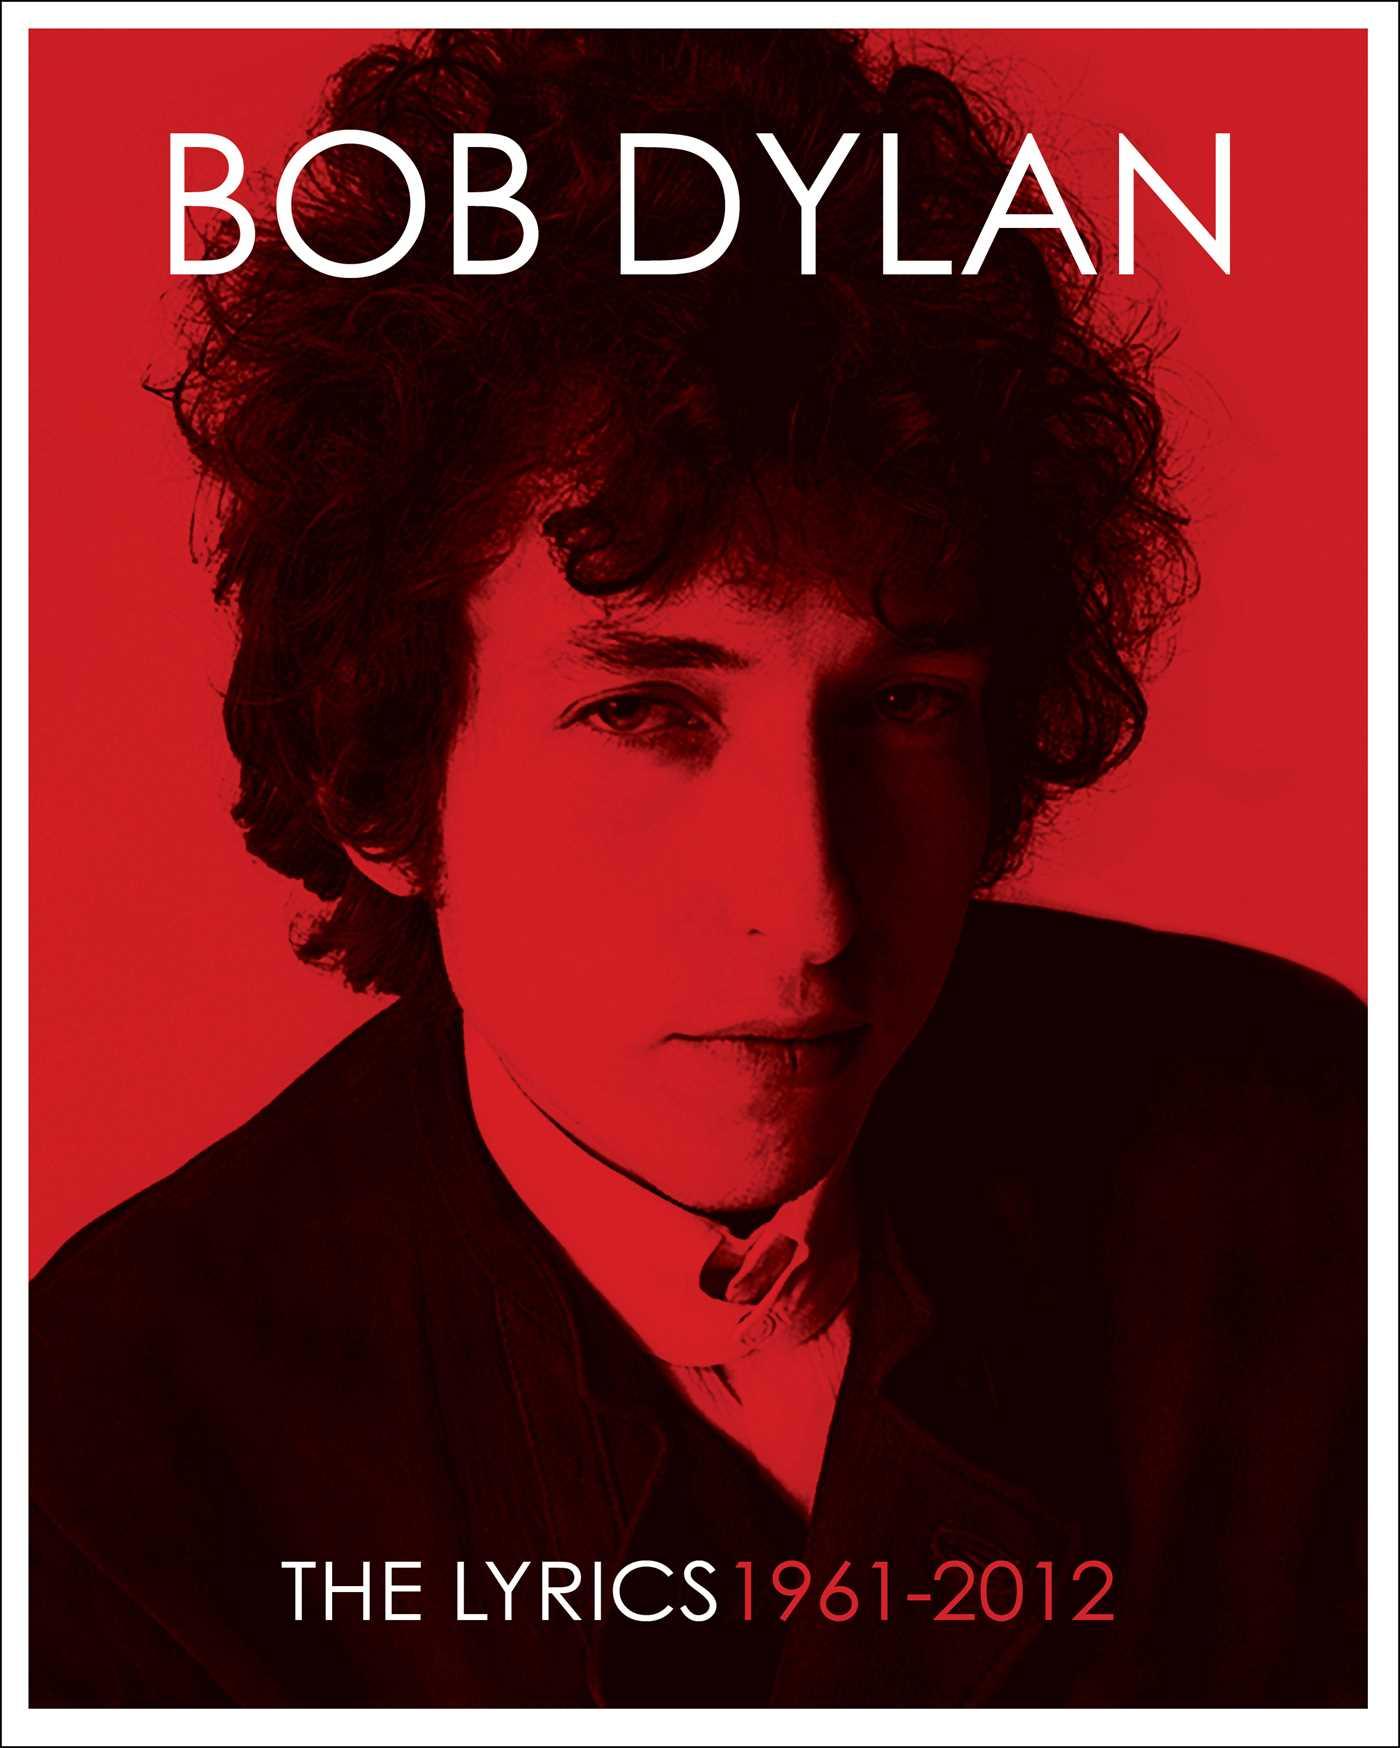 The Lyrics: 1961-2012 / Bob Dylan / Buch / Gebunden / Englisch / 2016 / Simon + Schuster LLC / EAN 9781451648768 - Dylan, Bob